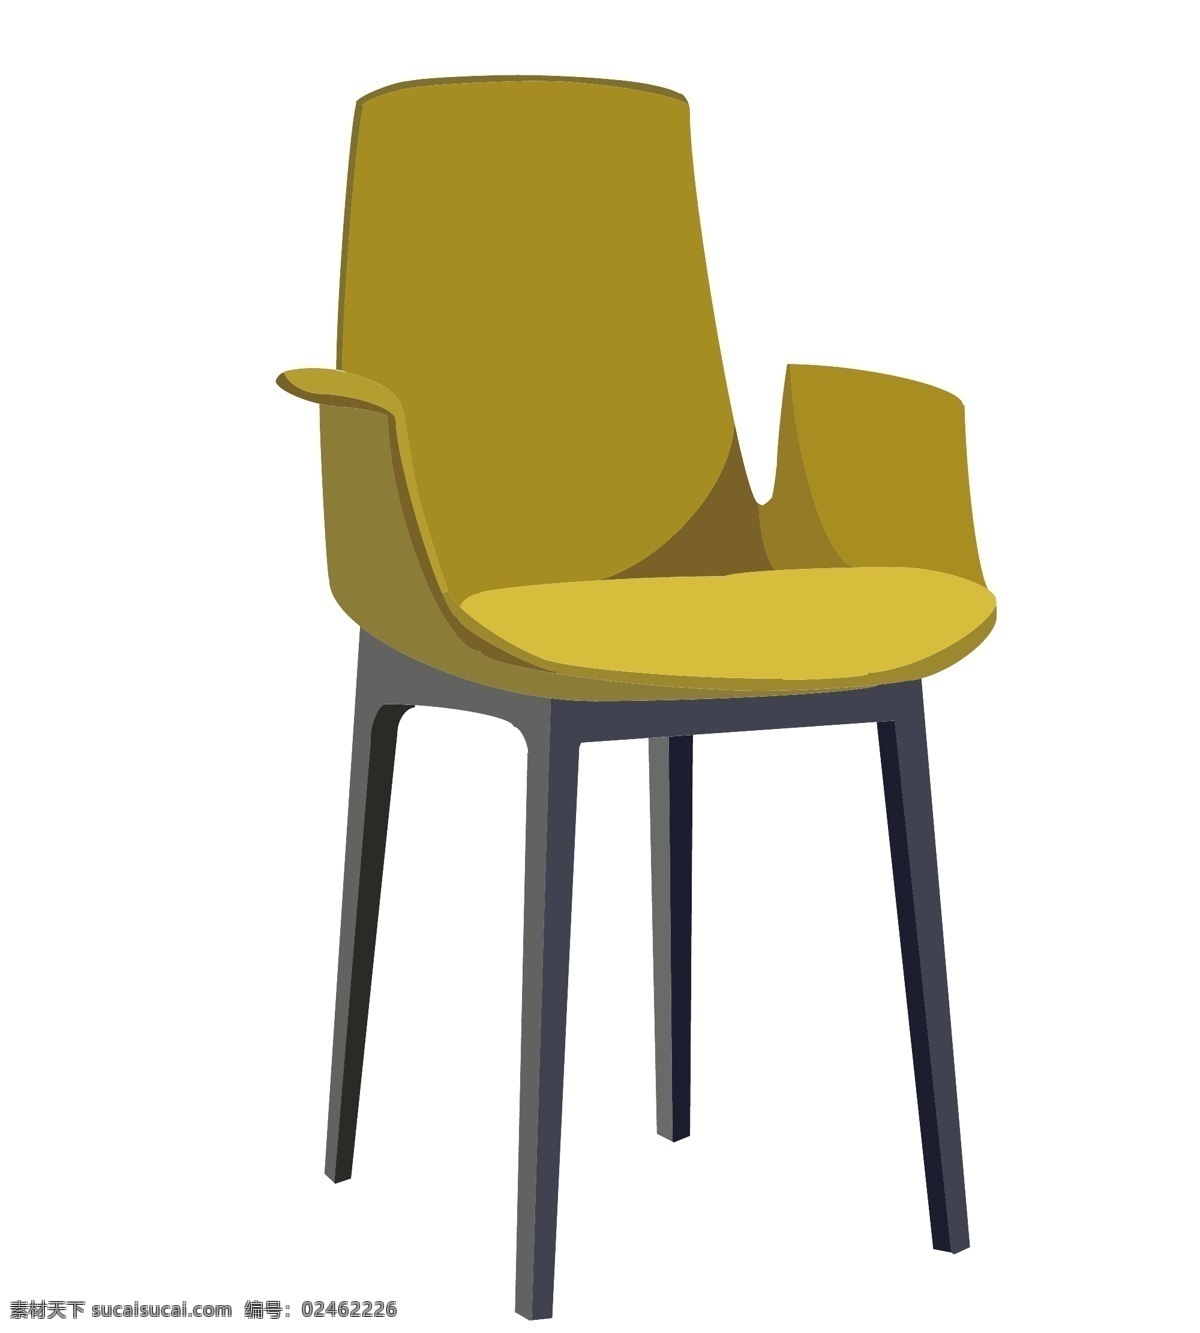 小 清新 黄色 椅子 插画 小清新 黄色的椅子 家居生活馆 家具 靠椅 餐椅 时尚 简约 餐厅 现代椅子